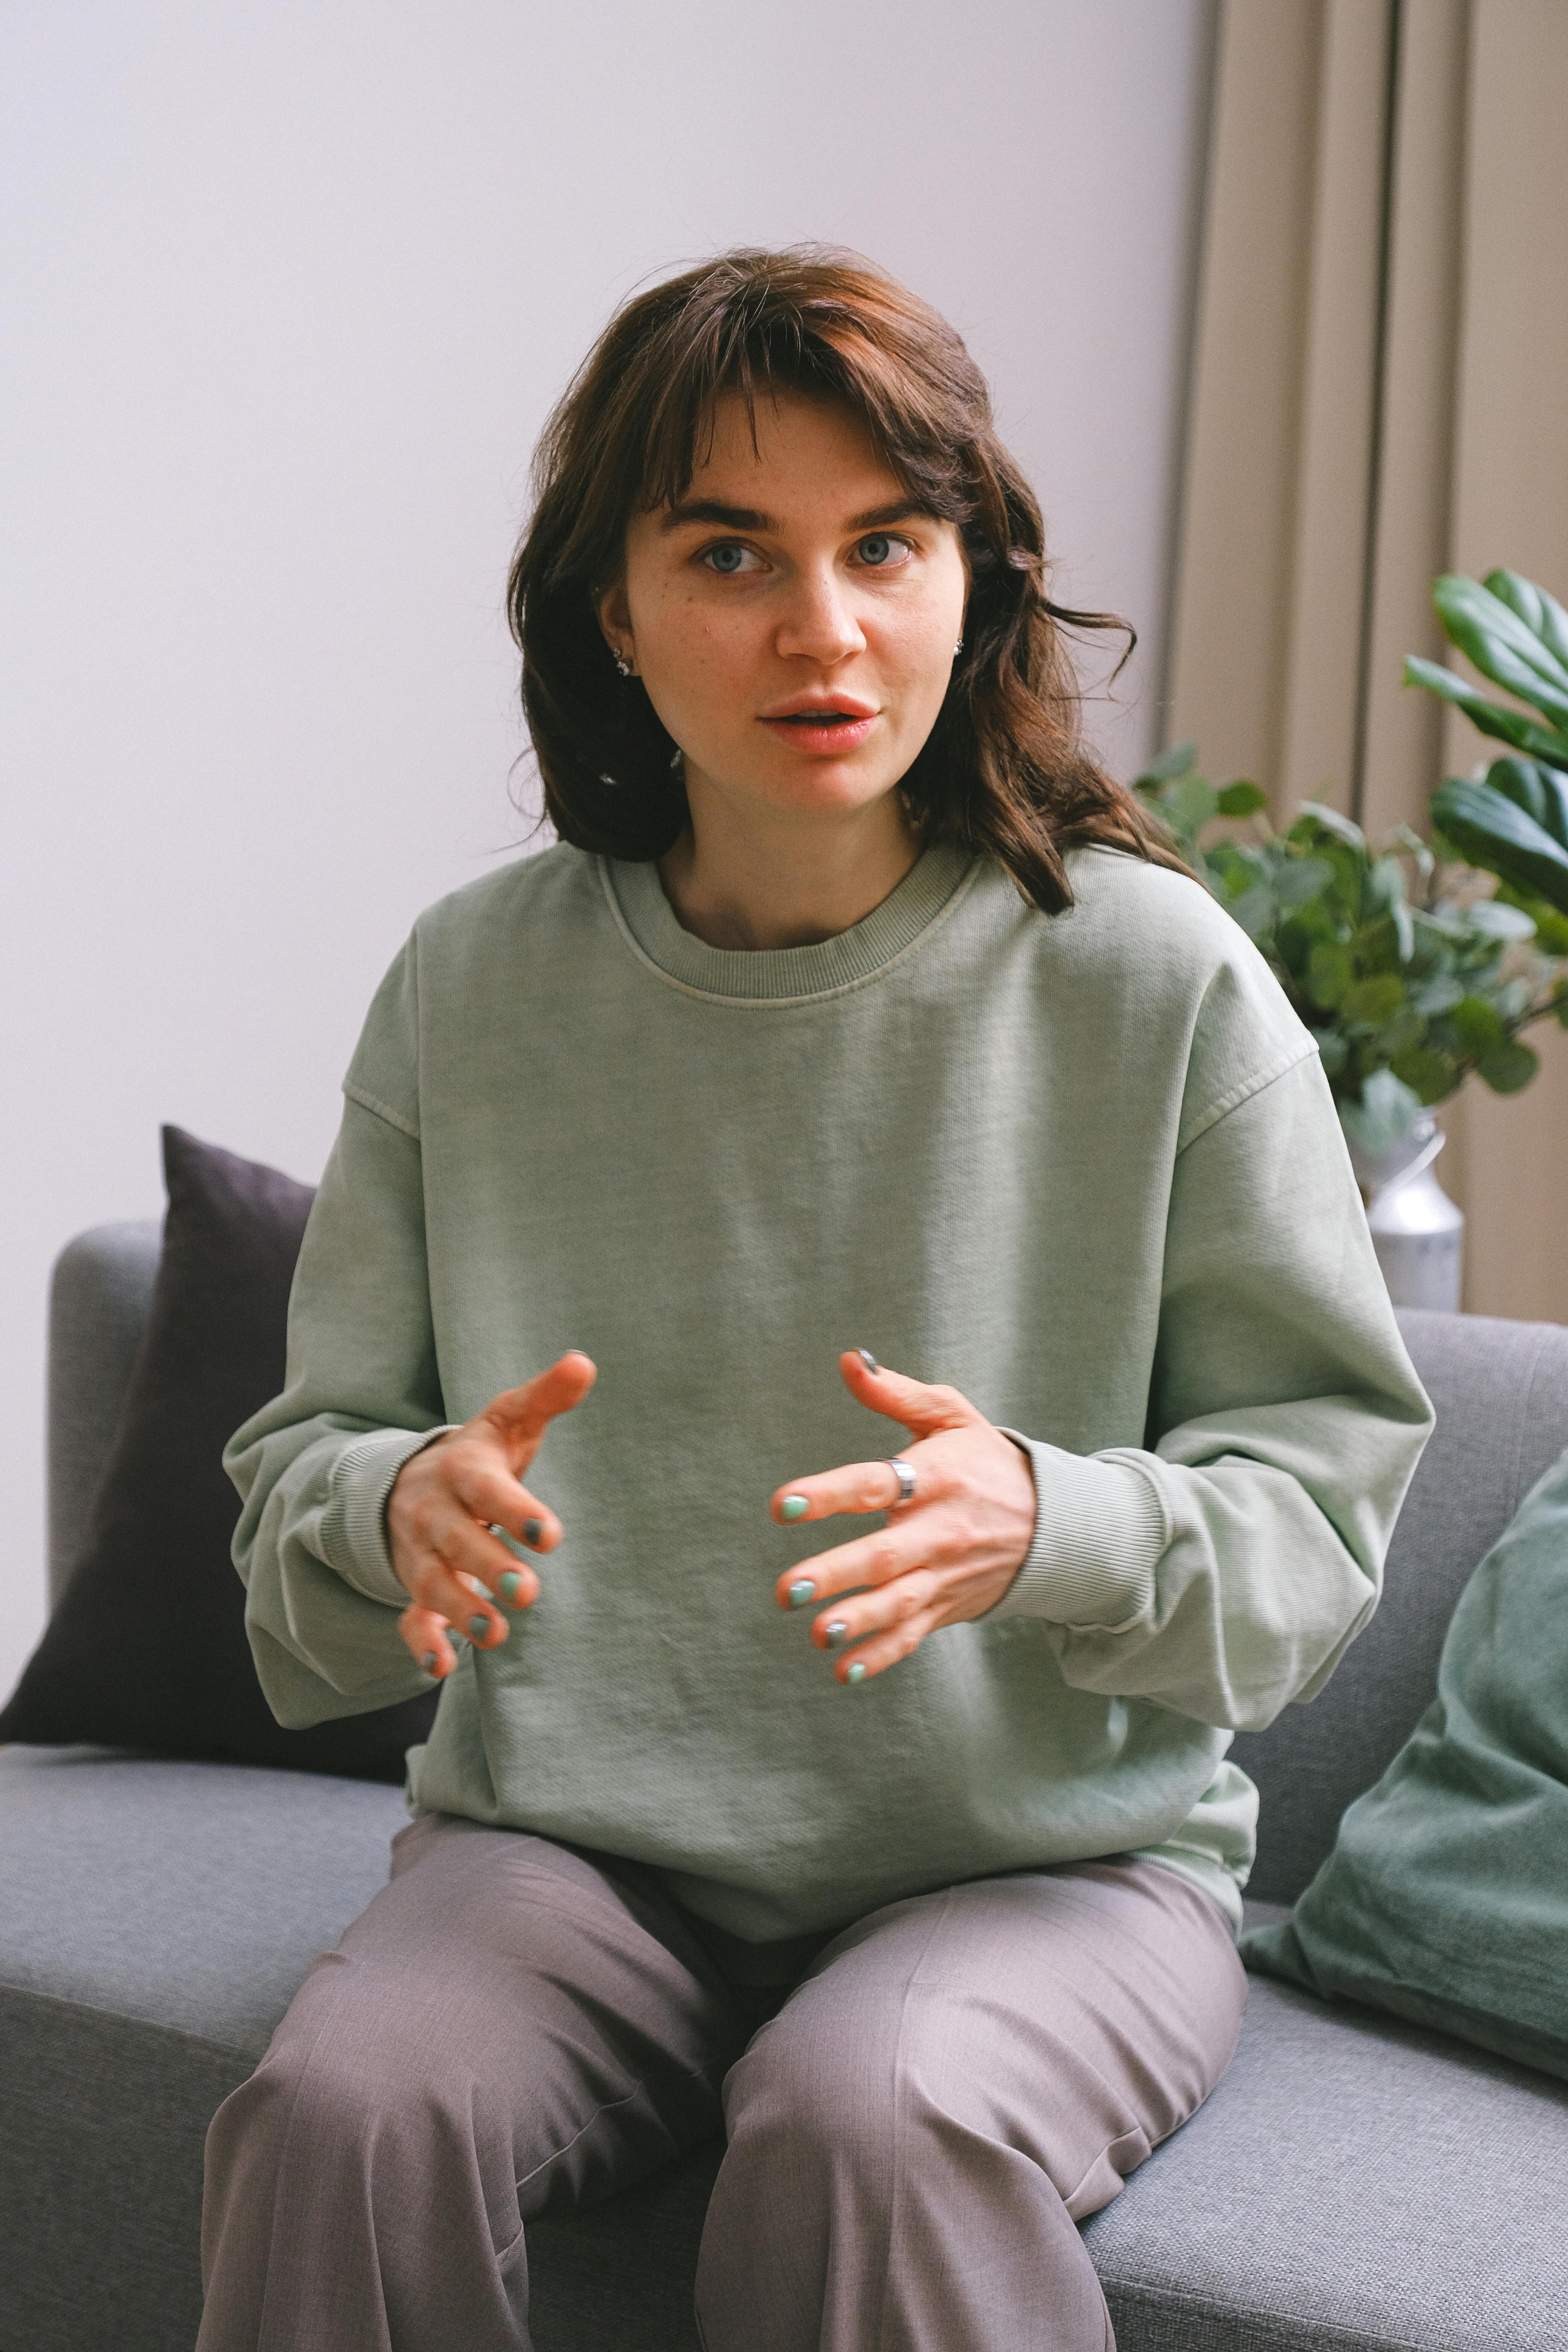 Une jeune femme qui s'exprime en faisant des gestes avec ses mains | Source : Pexels